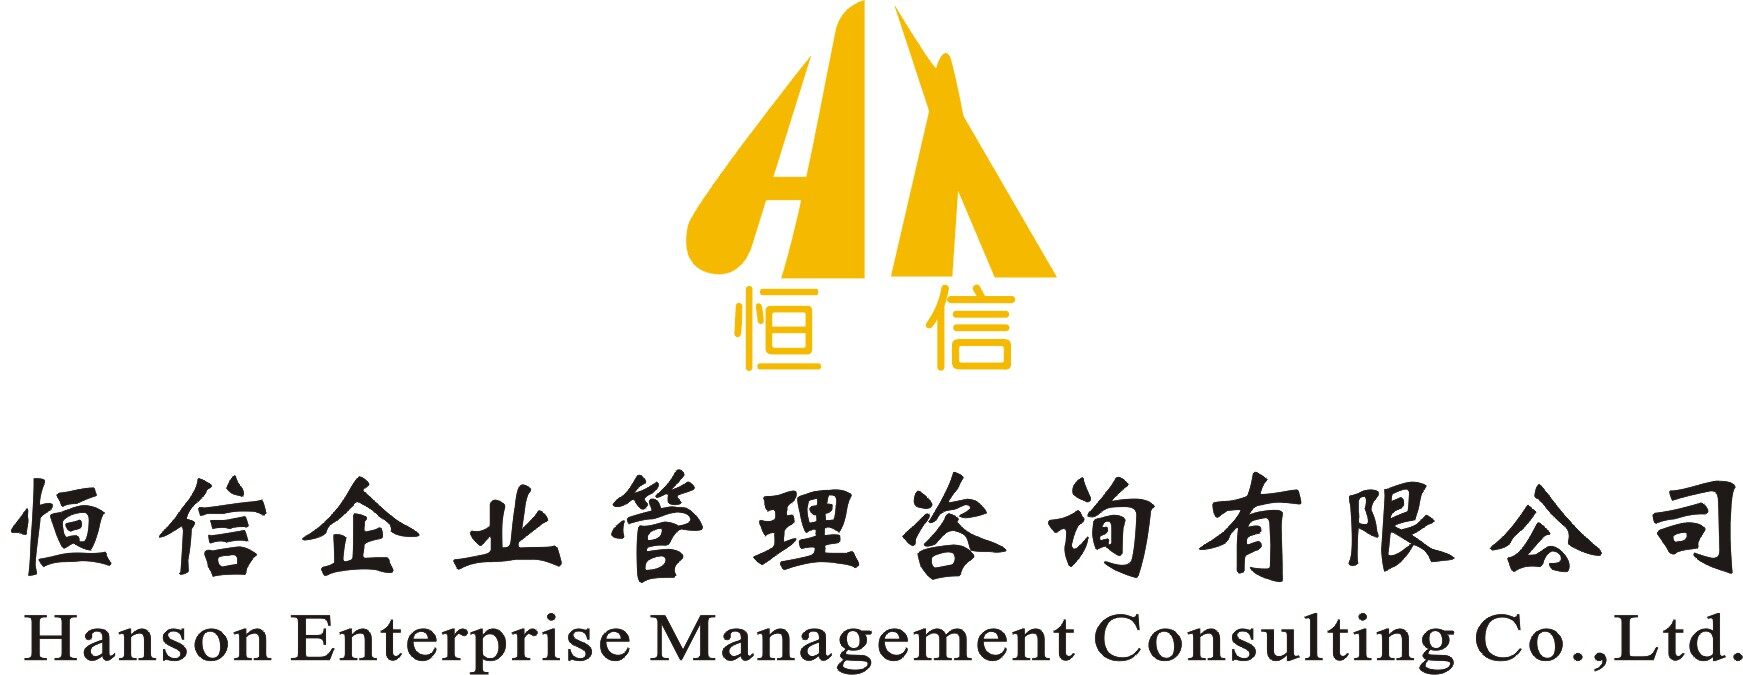 东莞市恒信企业管理咨询有限公司logo